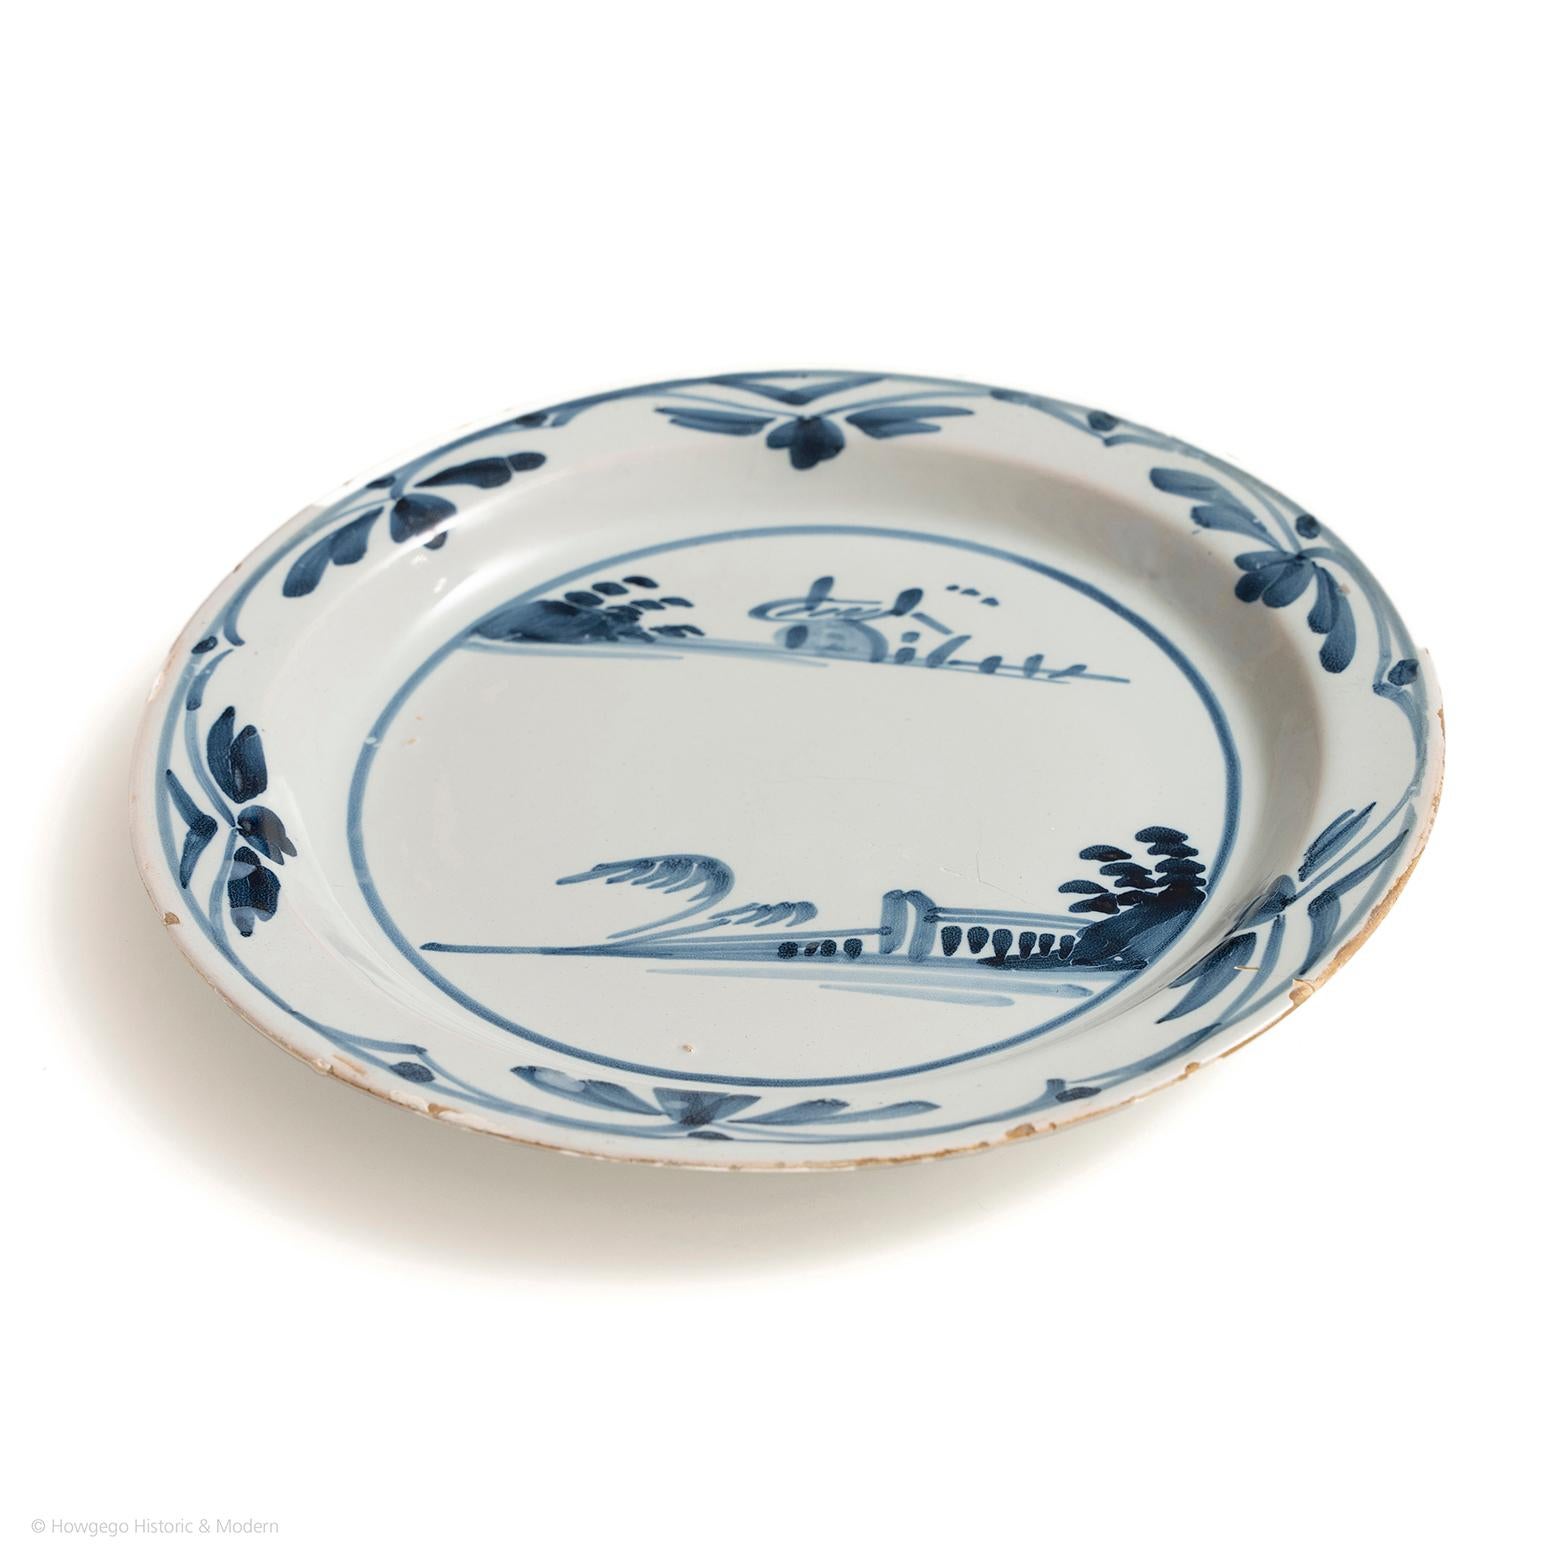 Plate delft London Chinoiserie Landschaft blau-weiße Keramik Durchmesser 22,5cm 9